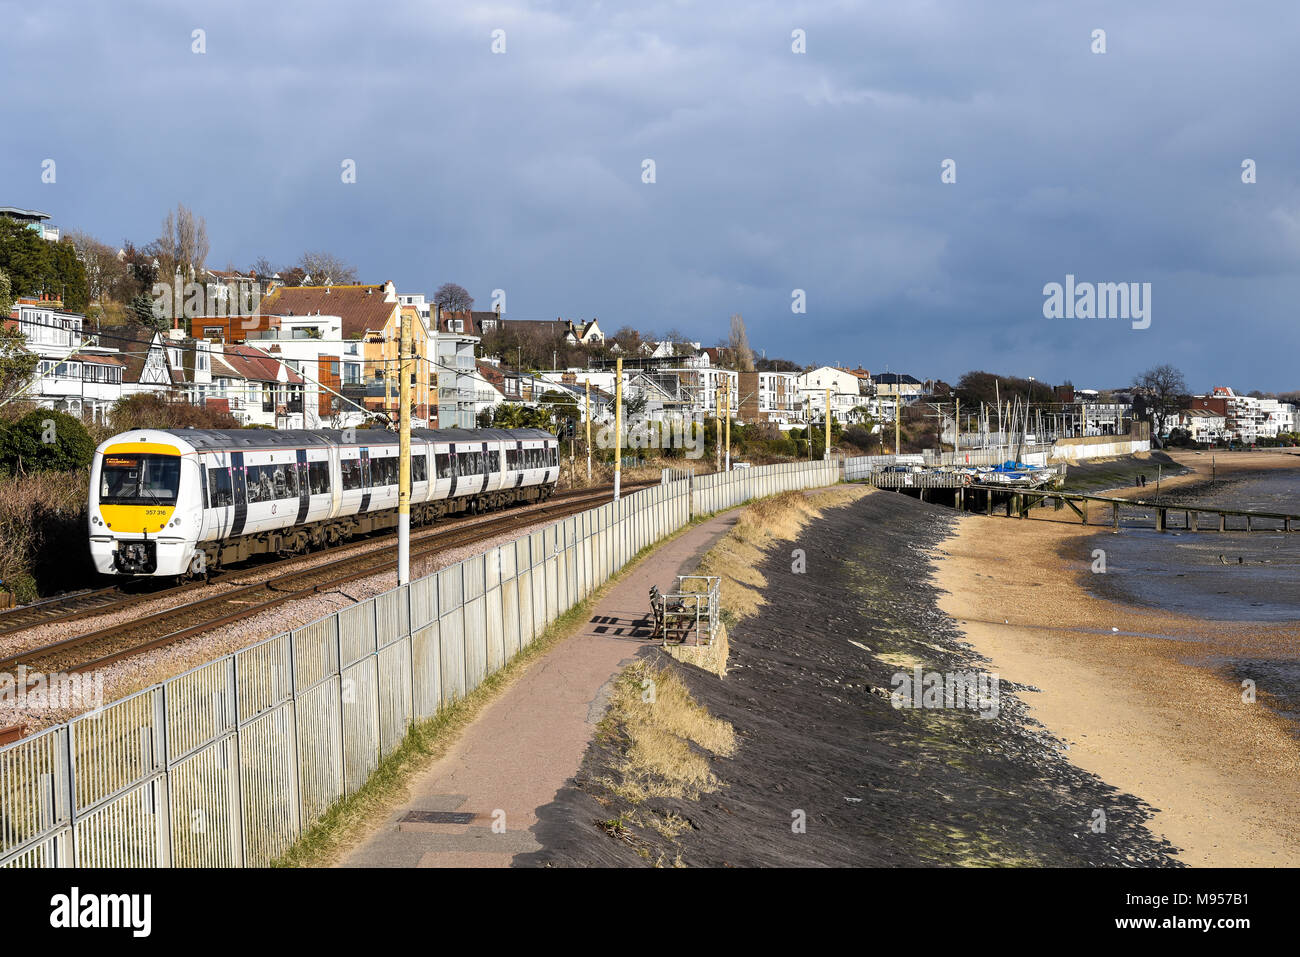 C2C-Eisenbahn Zug vorbei Thames Estuary am Strand Chalkwell, Southend On Sea, Essex. Klasse 357 Elektrischer Triebzug von Meer und Strand. Yachten Stockfoto